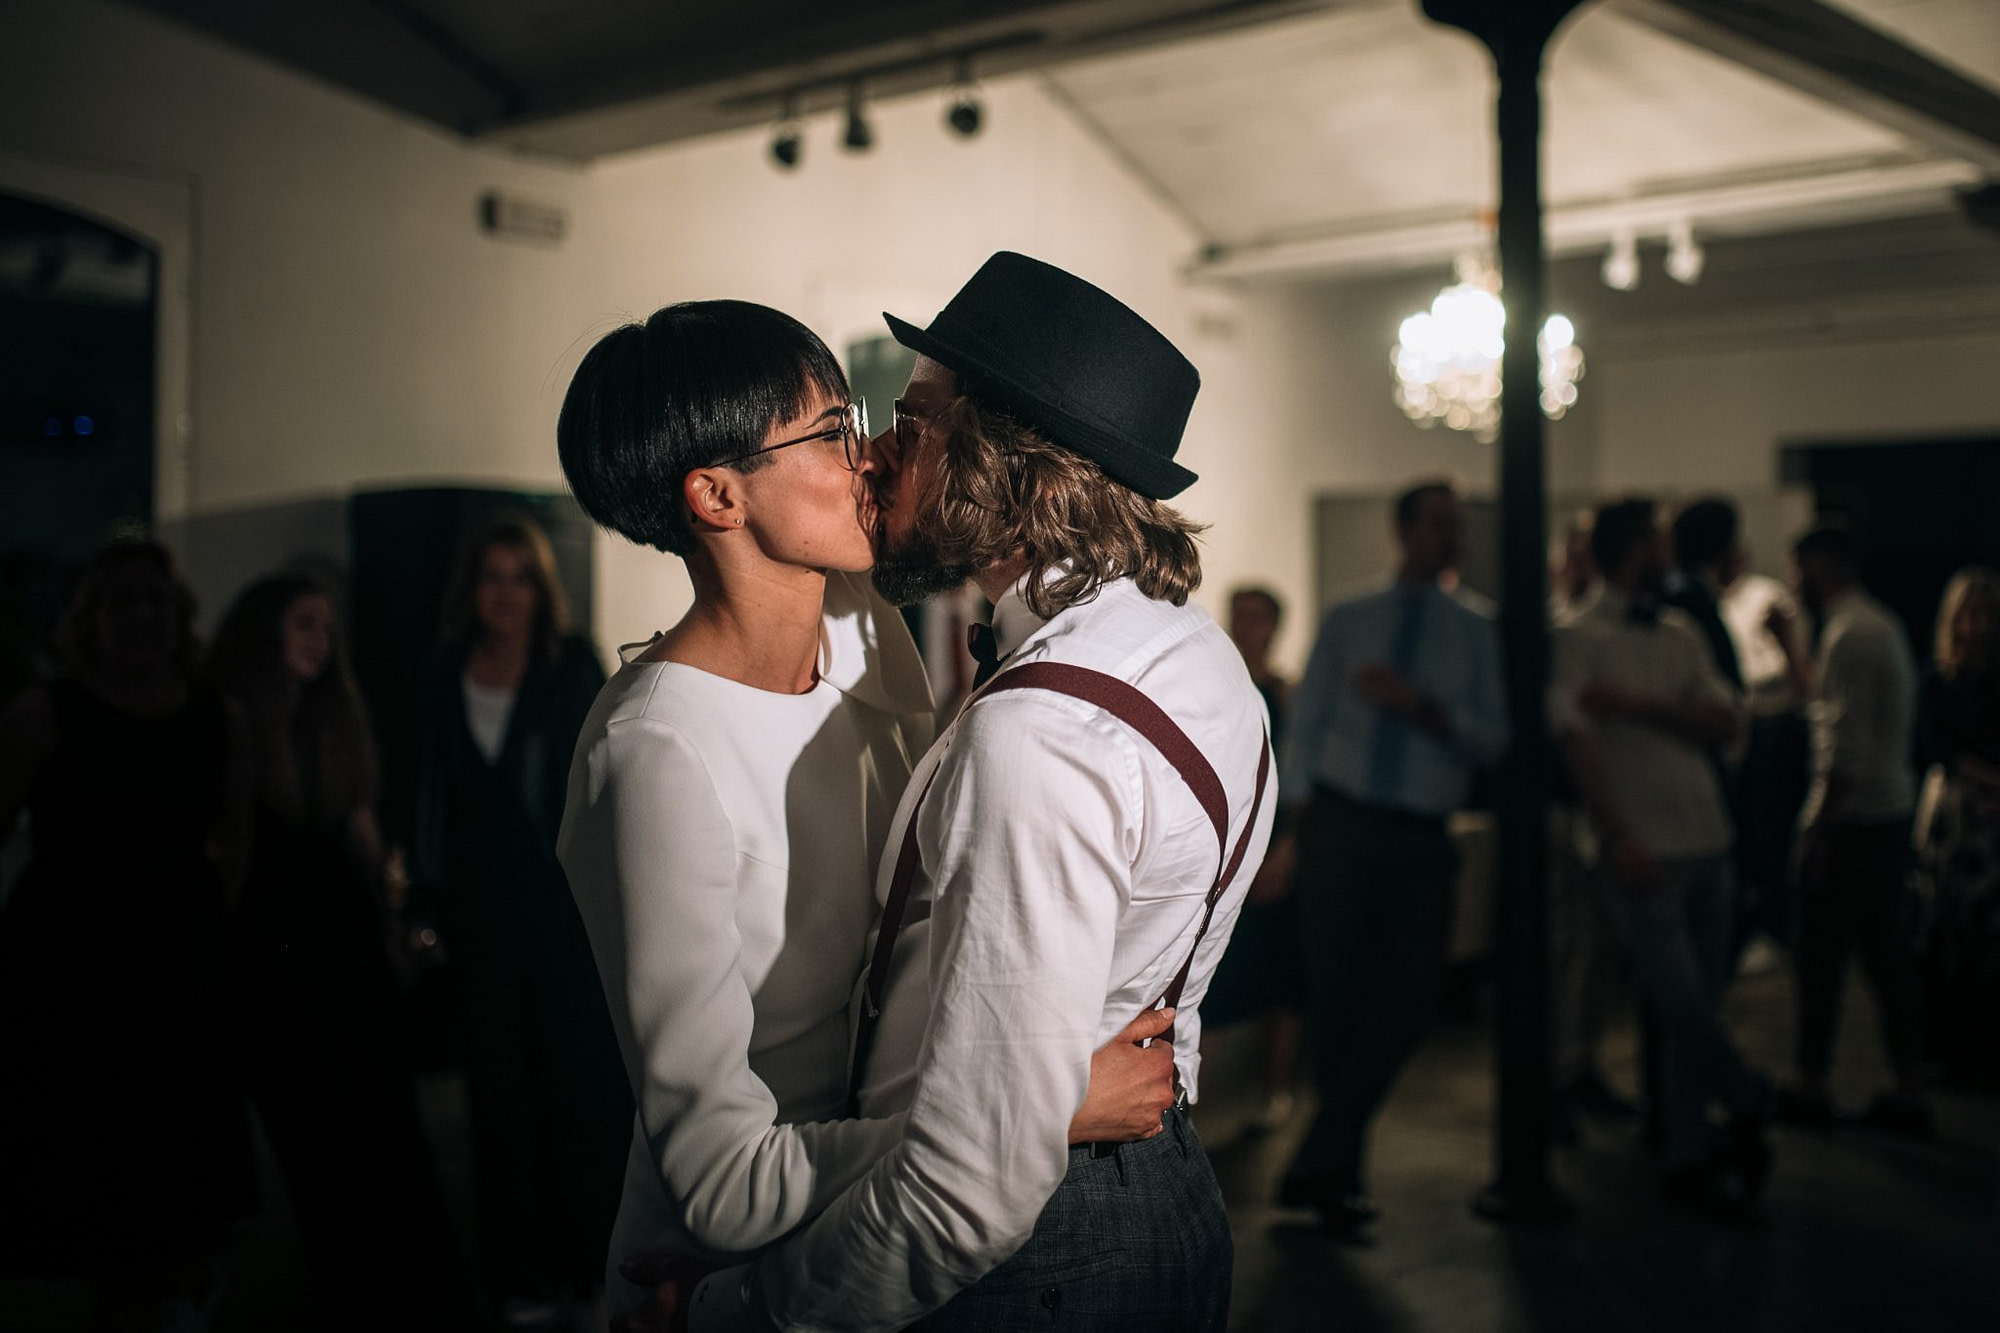 il bacio tra gli sposi nella pista da ballo in mezzo agli invitati